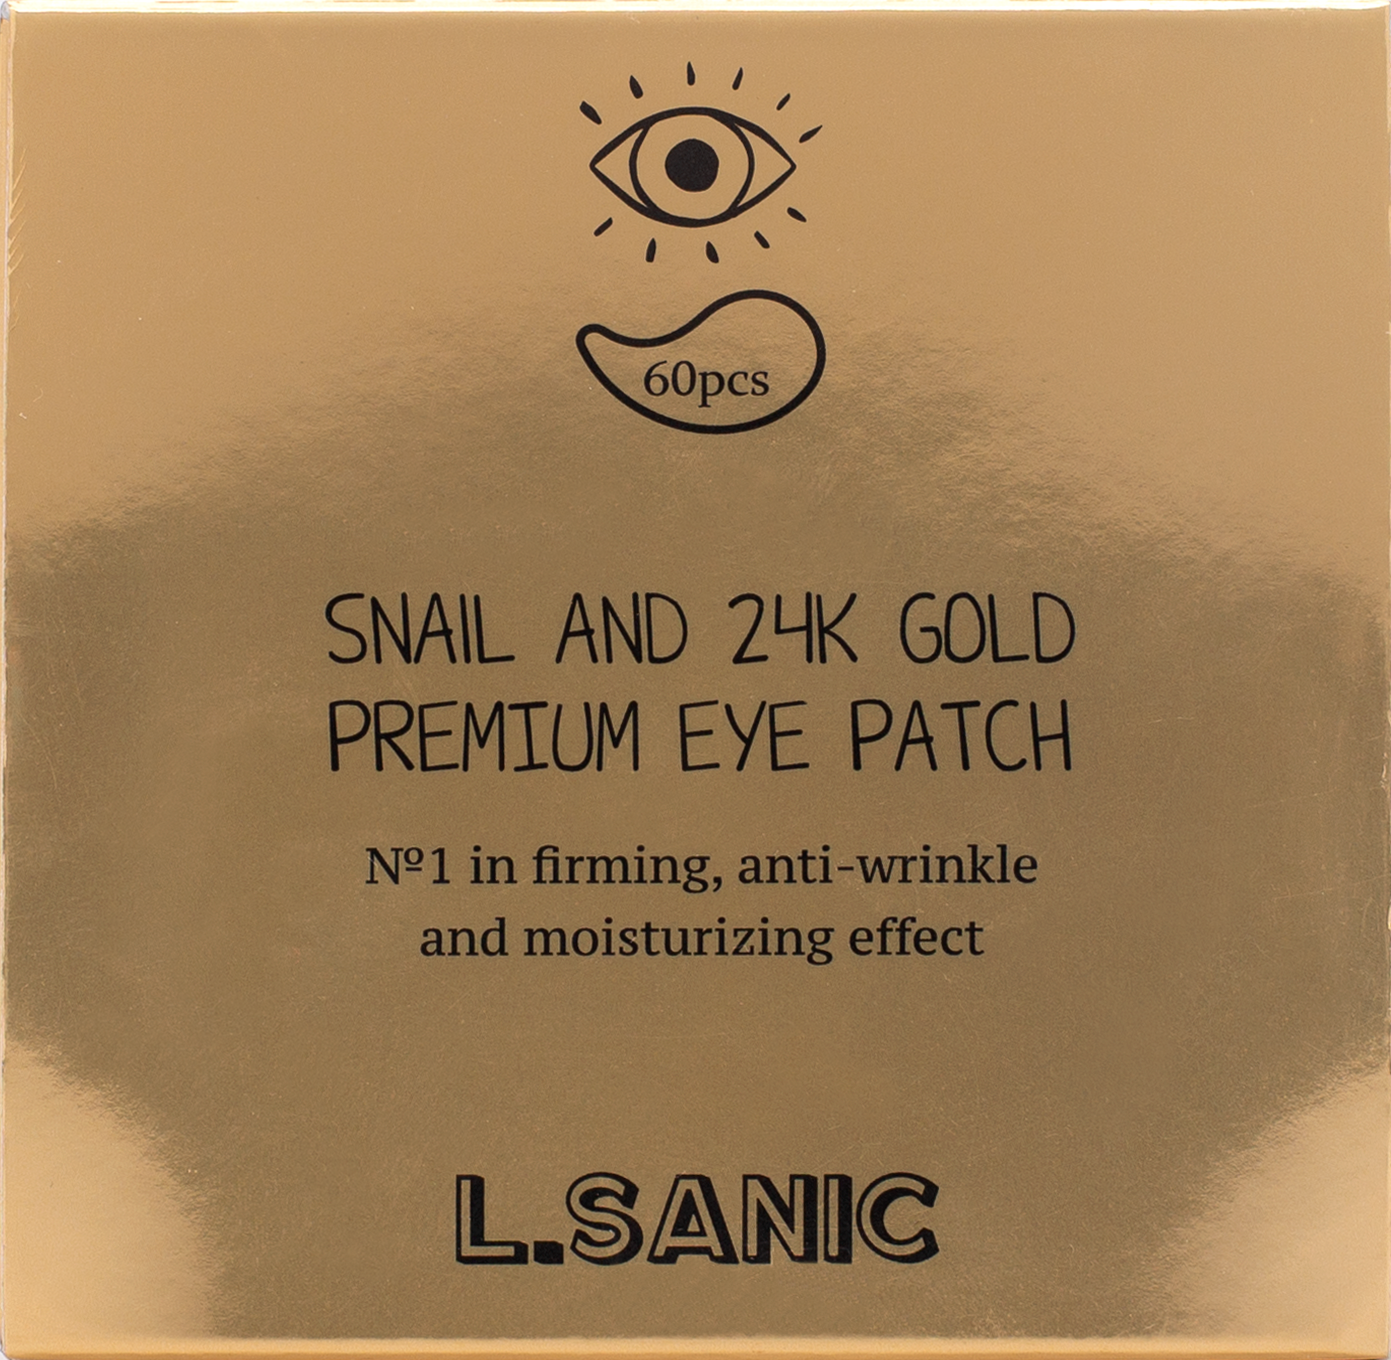 Гидрогелевые патчи L.SANIC для области вокруг глаз с муцином улитки и золотом, 60шт. - фото №10